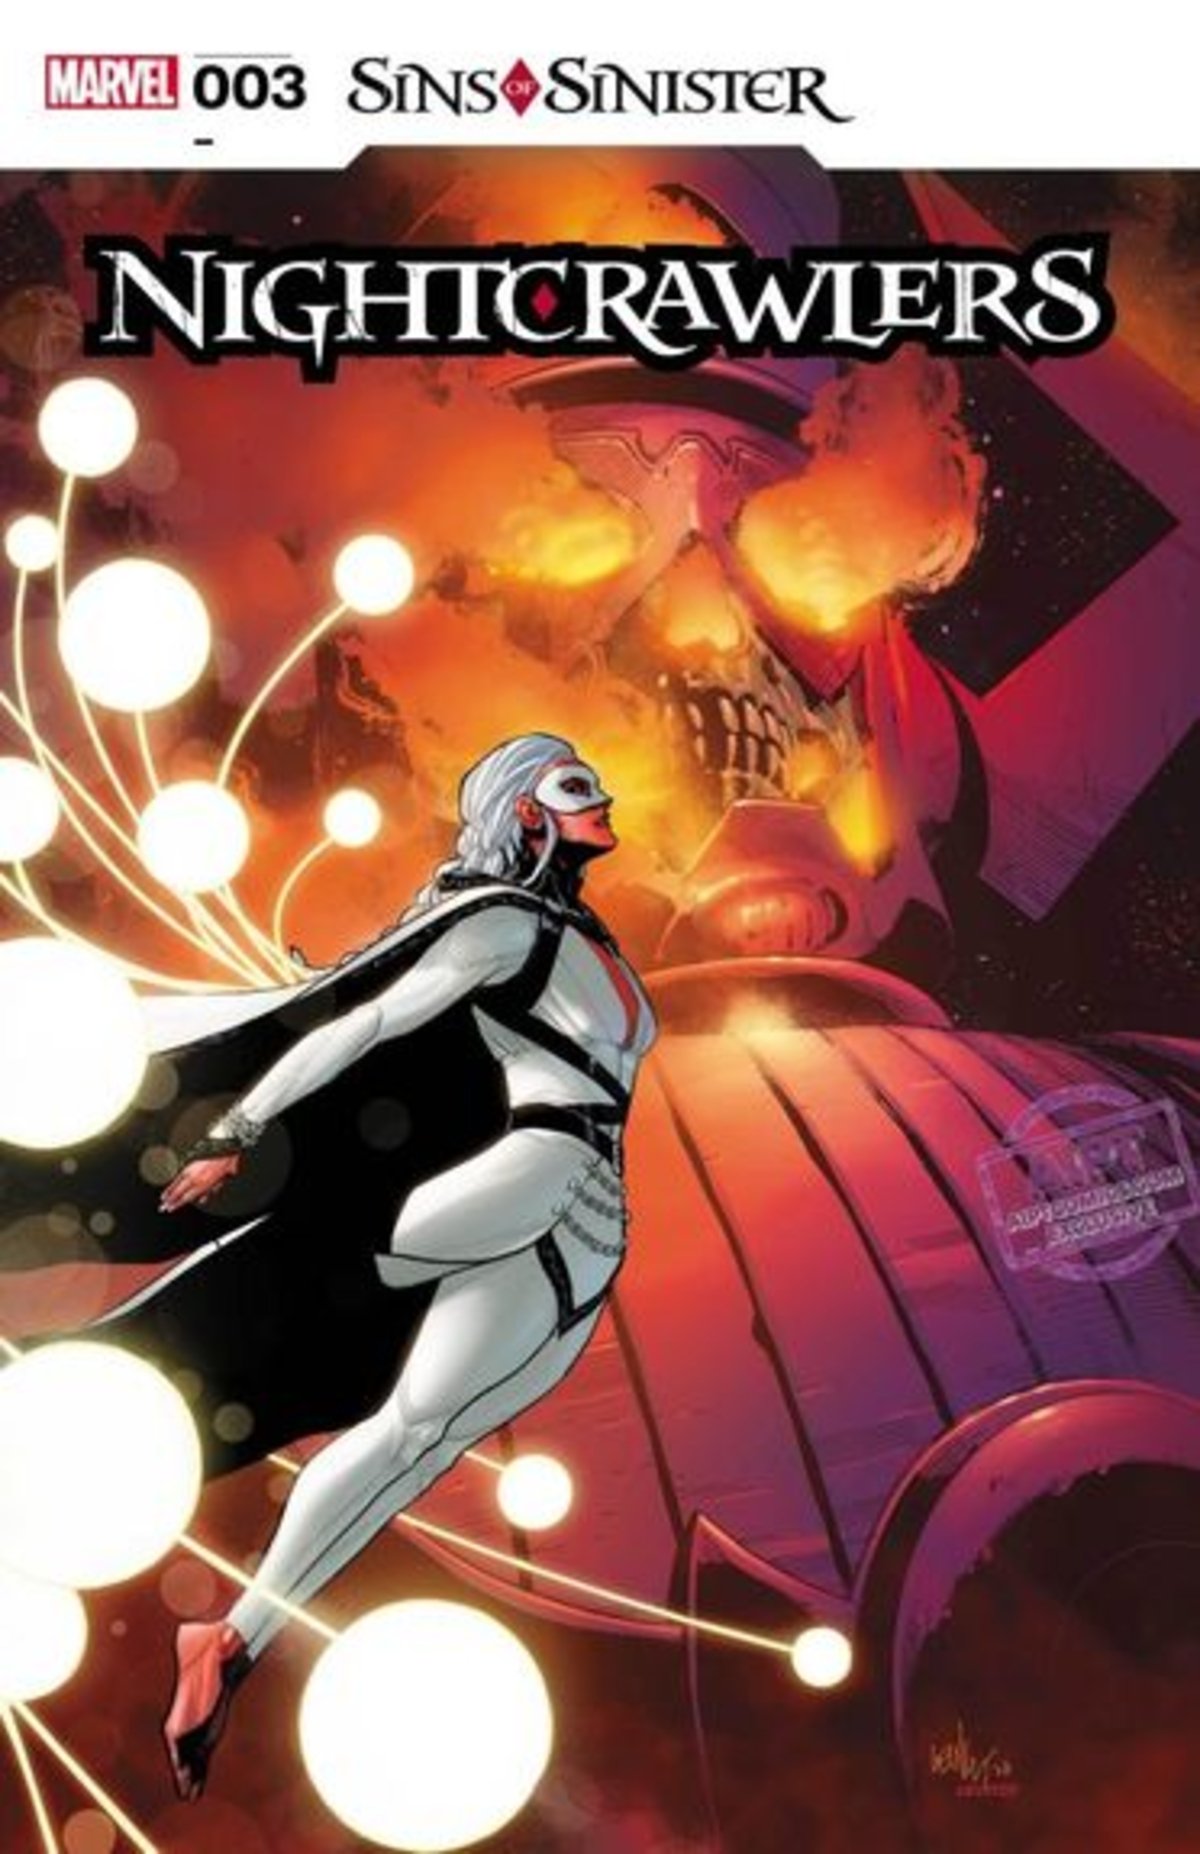 Portada del volumen #3 del cómic Nightcrawlers, de Marvel